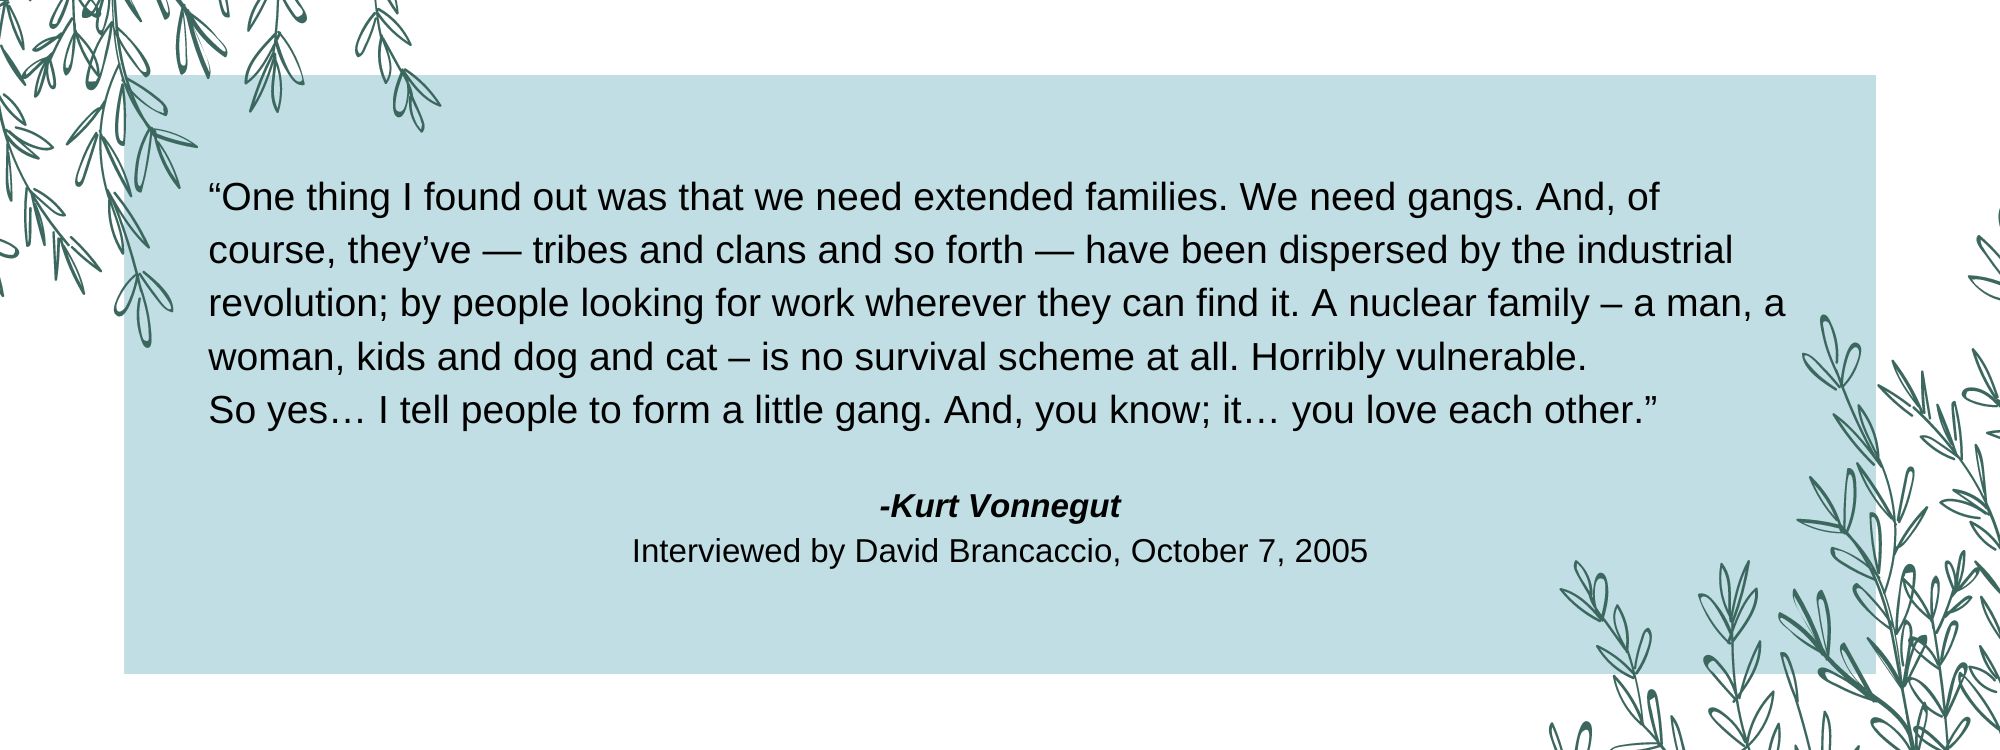 Kurt Vonnegut Interviewed by David Brancaccio, October 7, 2005